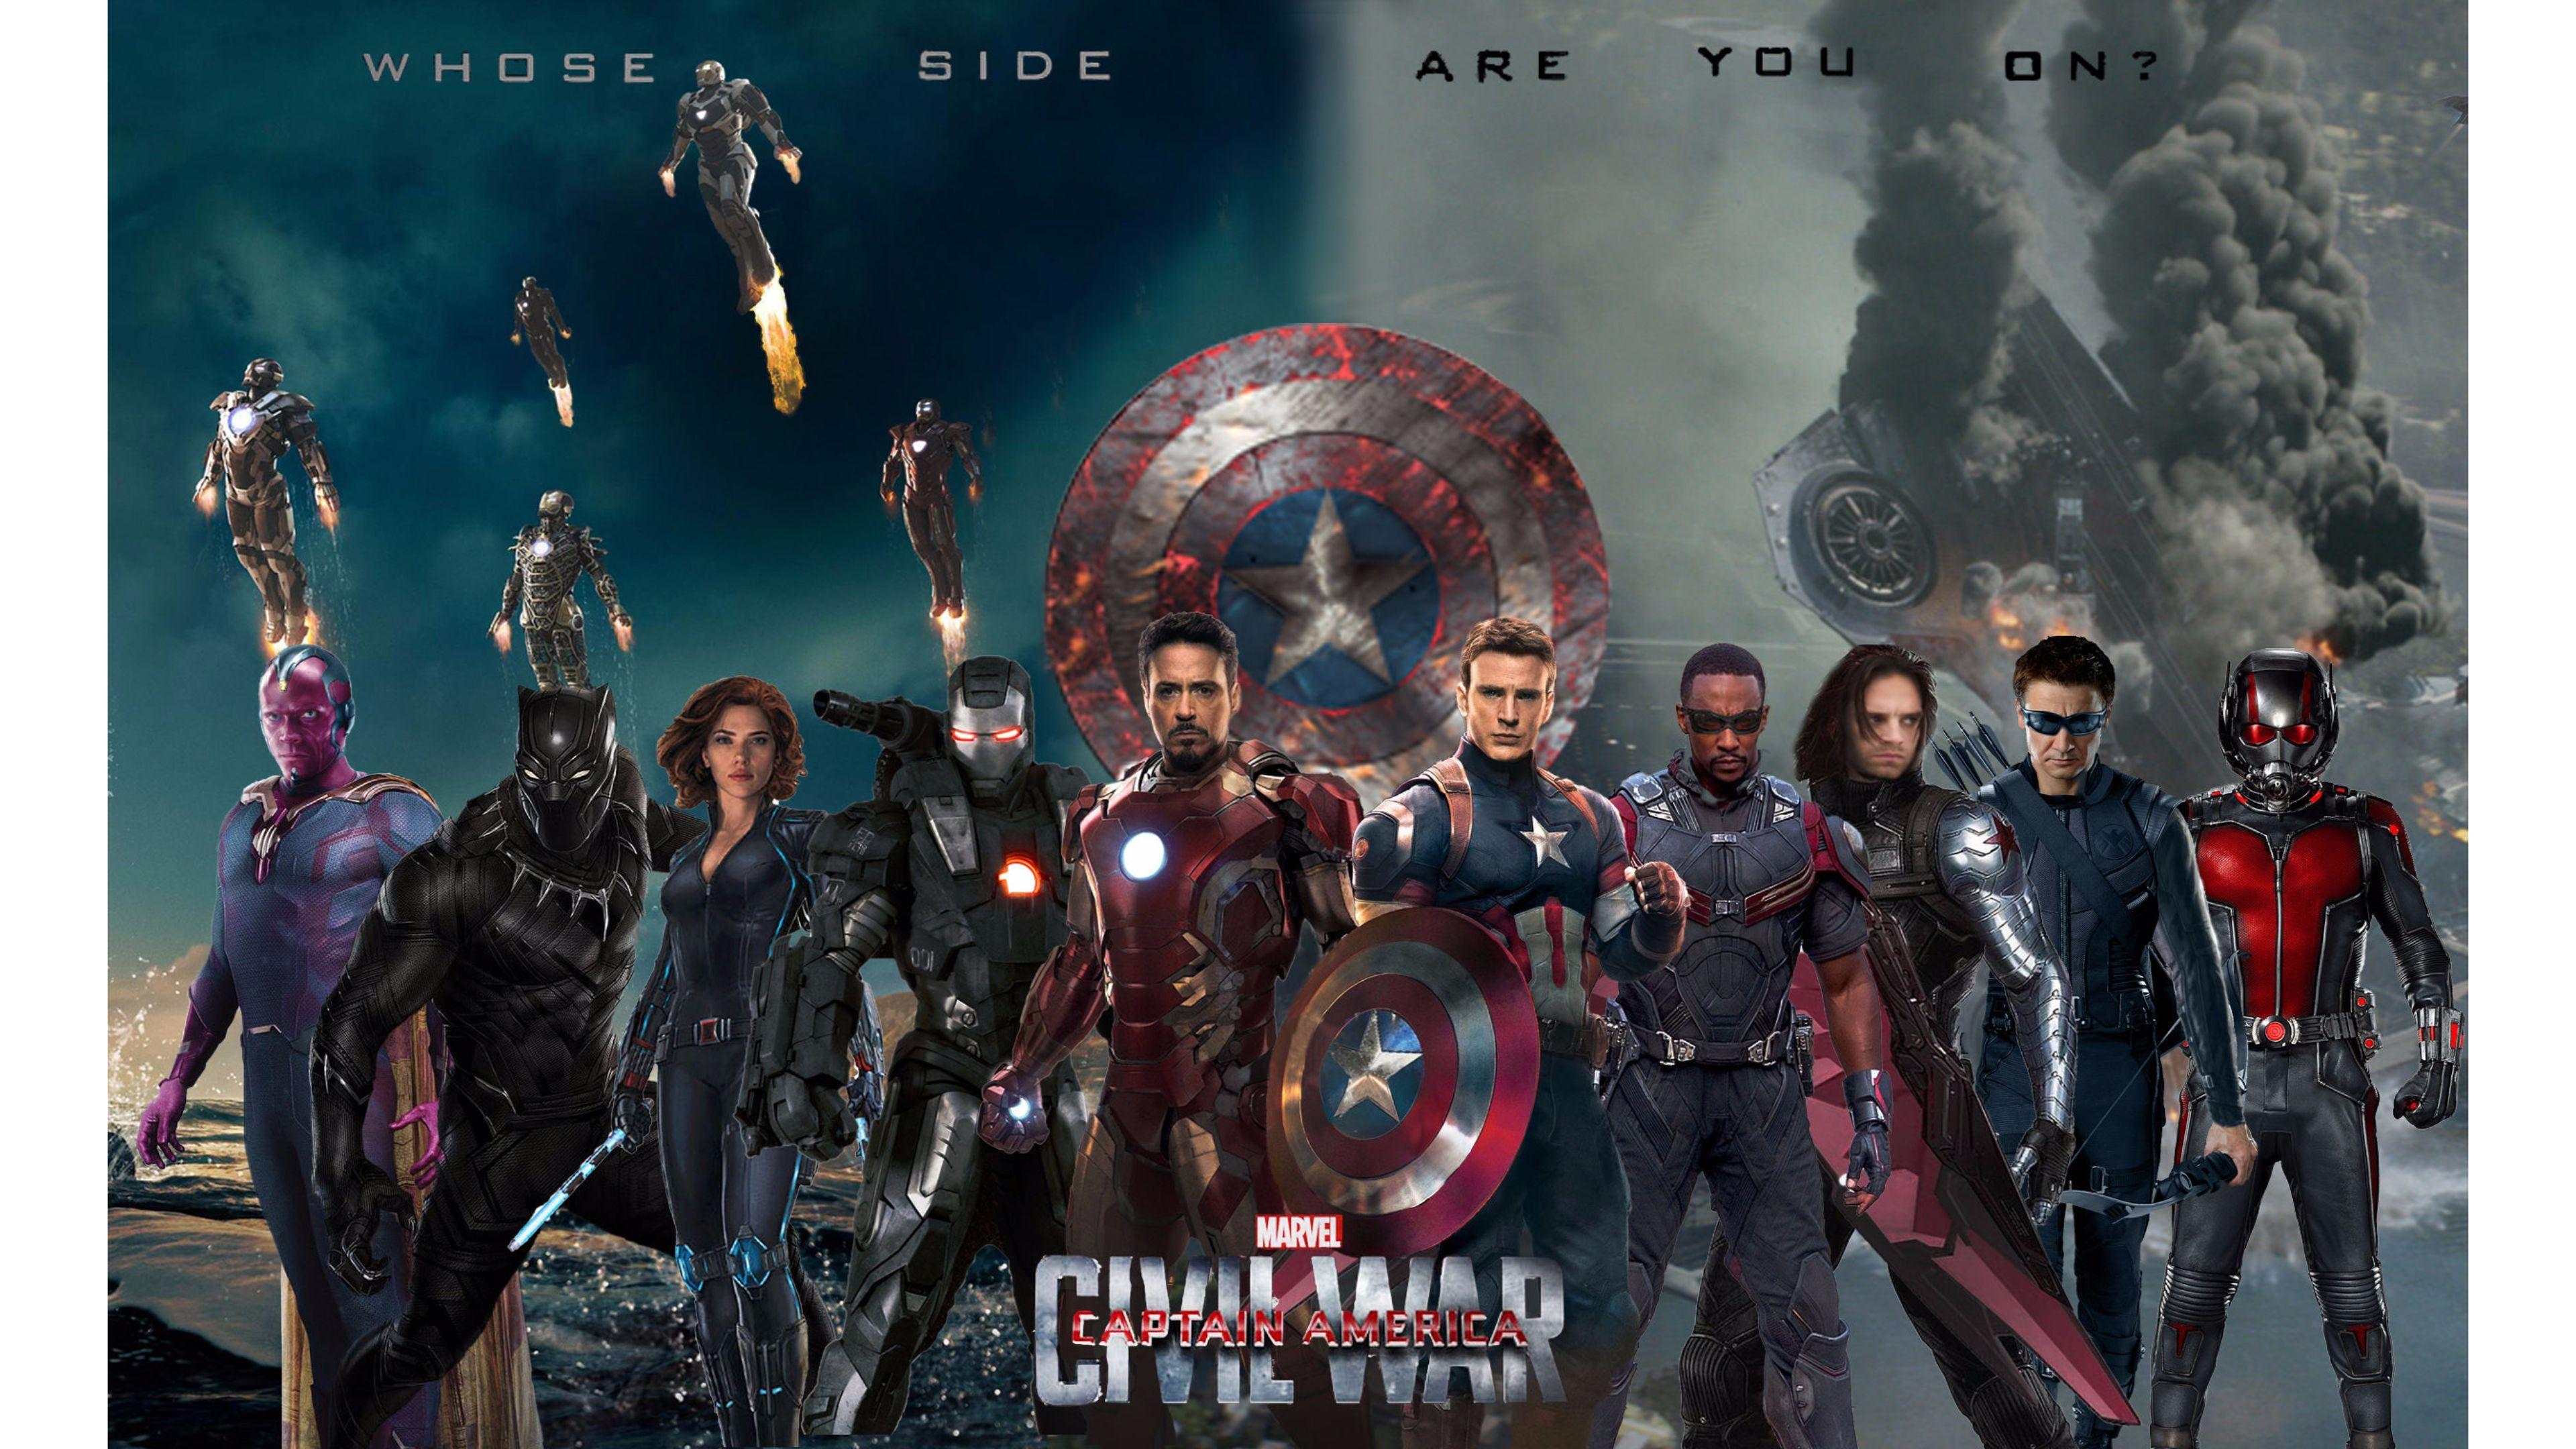 Captain America Civil War 4K Wallpaper. Free 4K Wallpaper